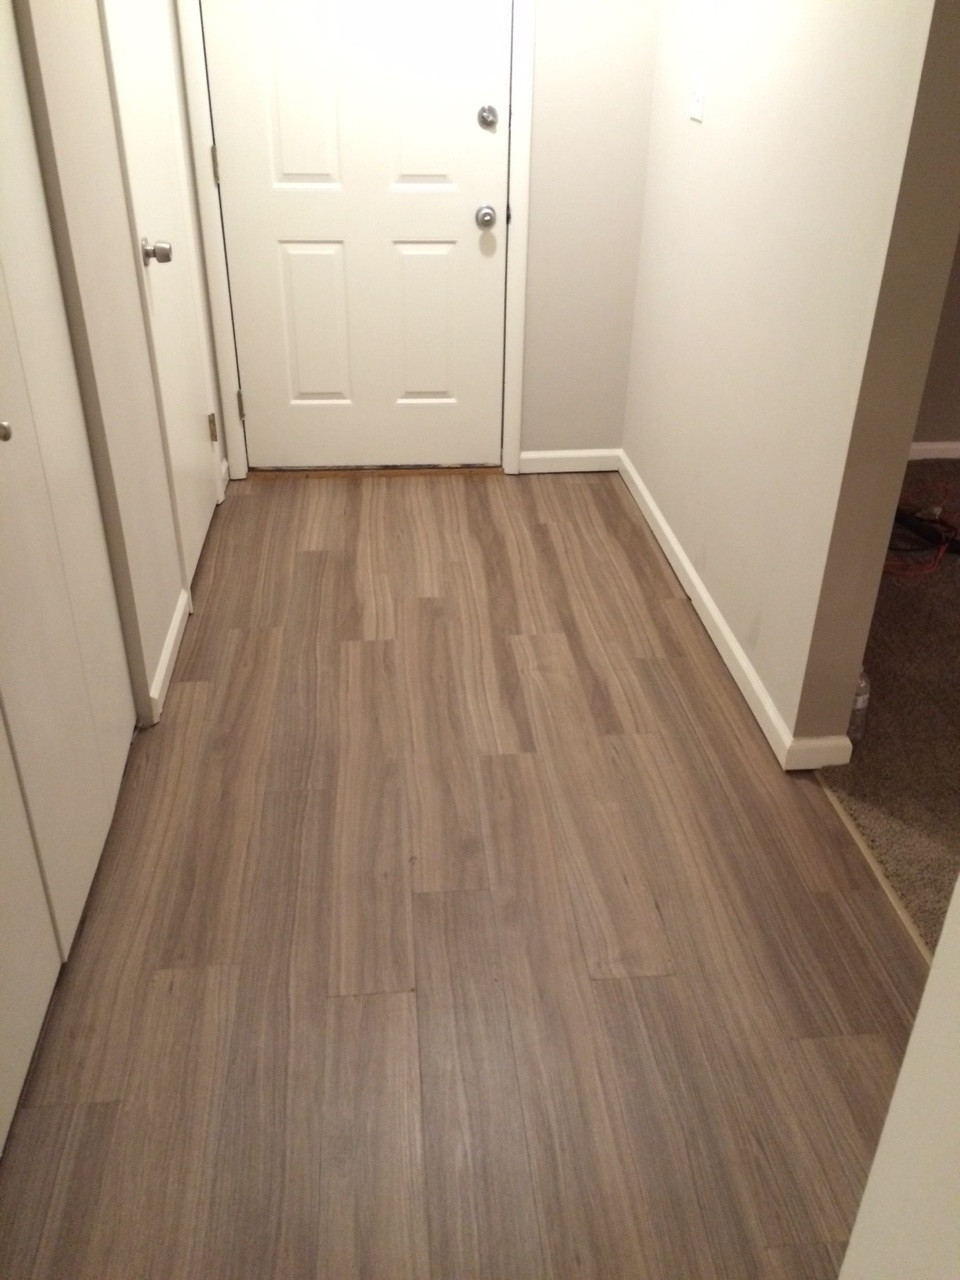 hardwood flooring in hawaii of direction of hardwood flooring in hallway shapeyourminds com regarding new hallway flooring